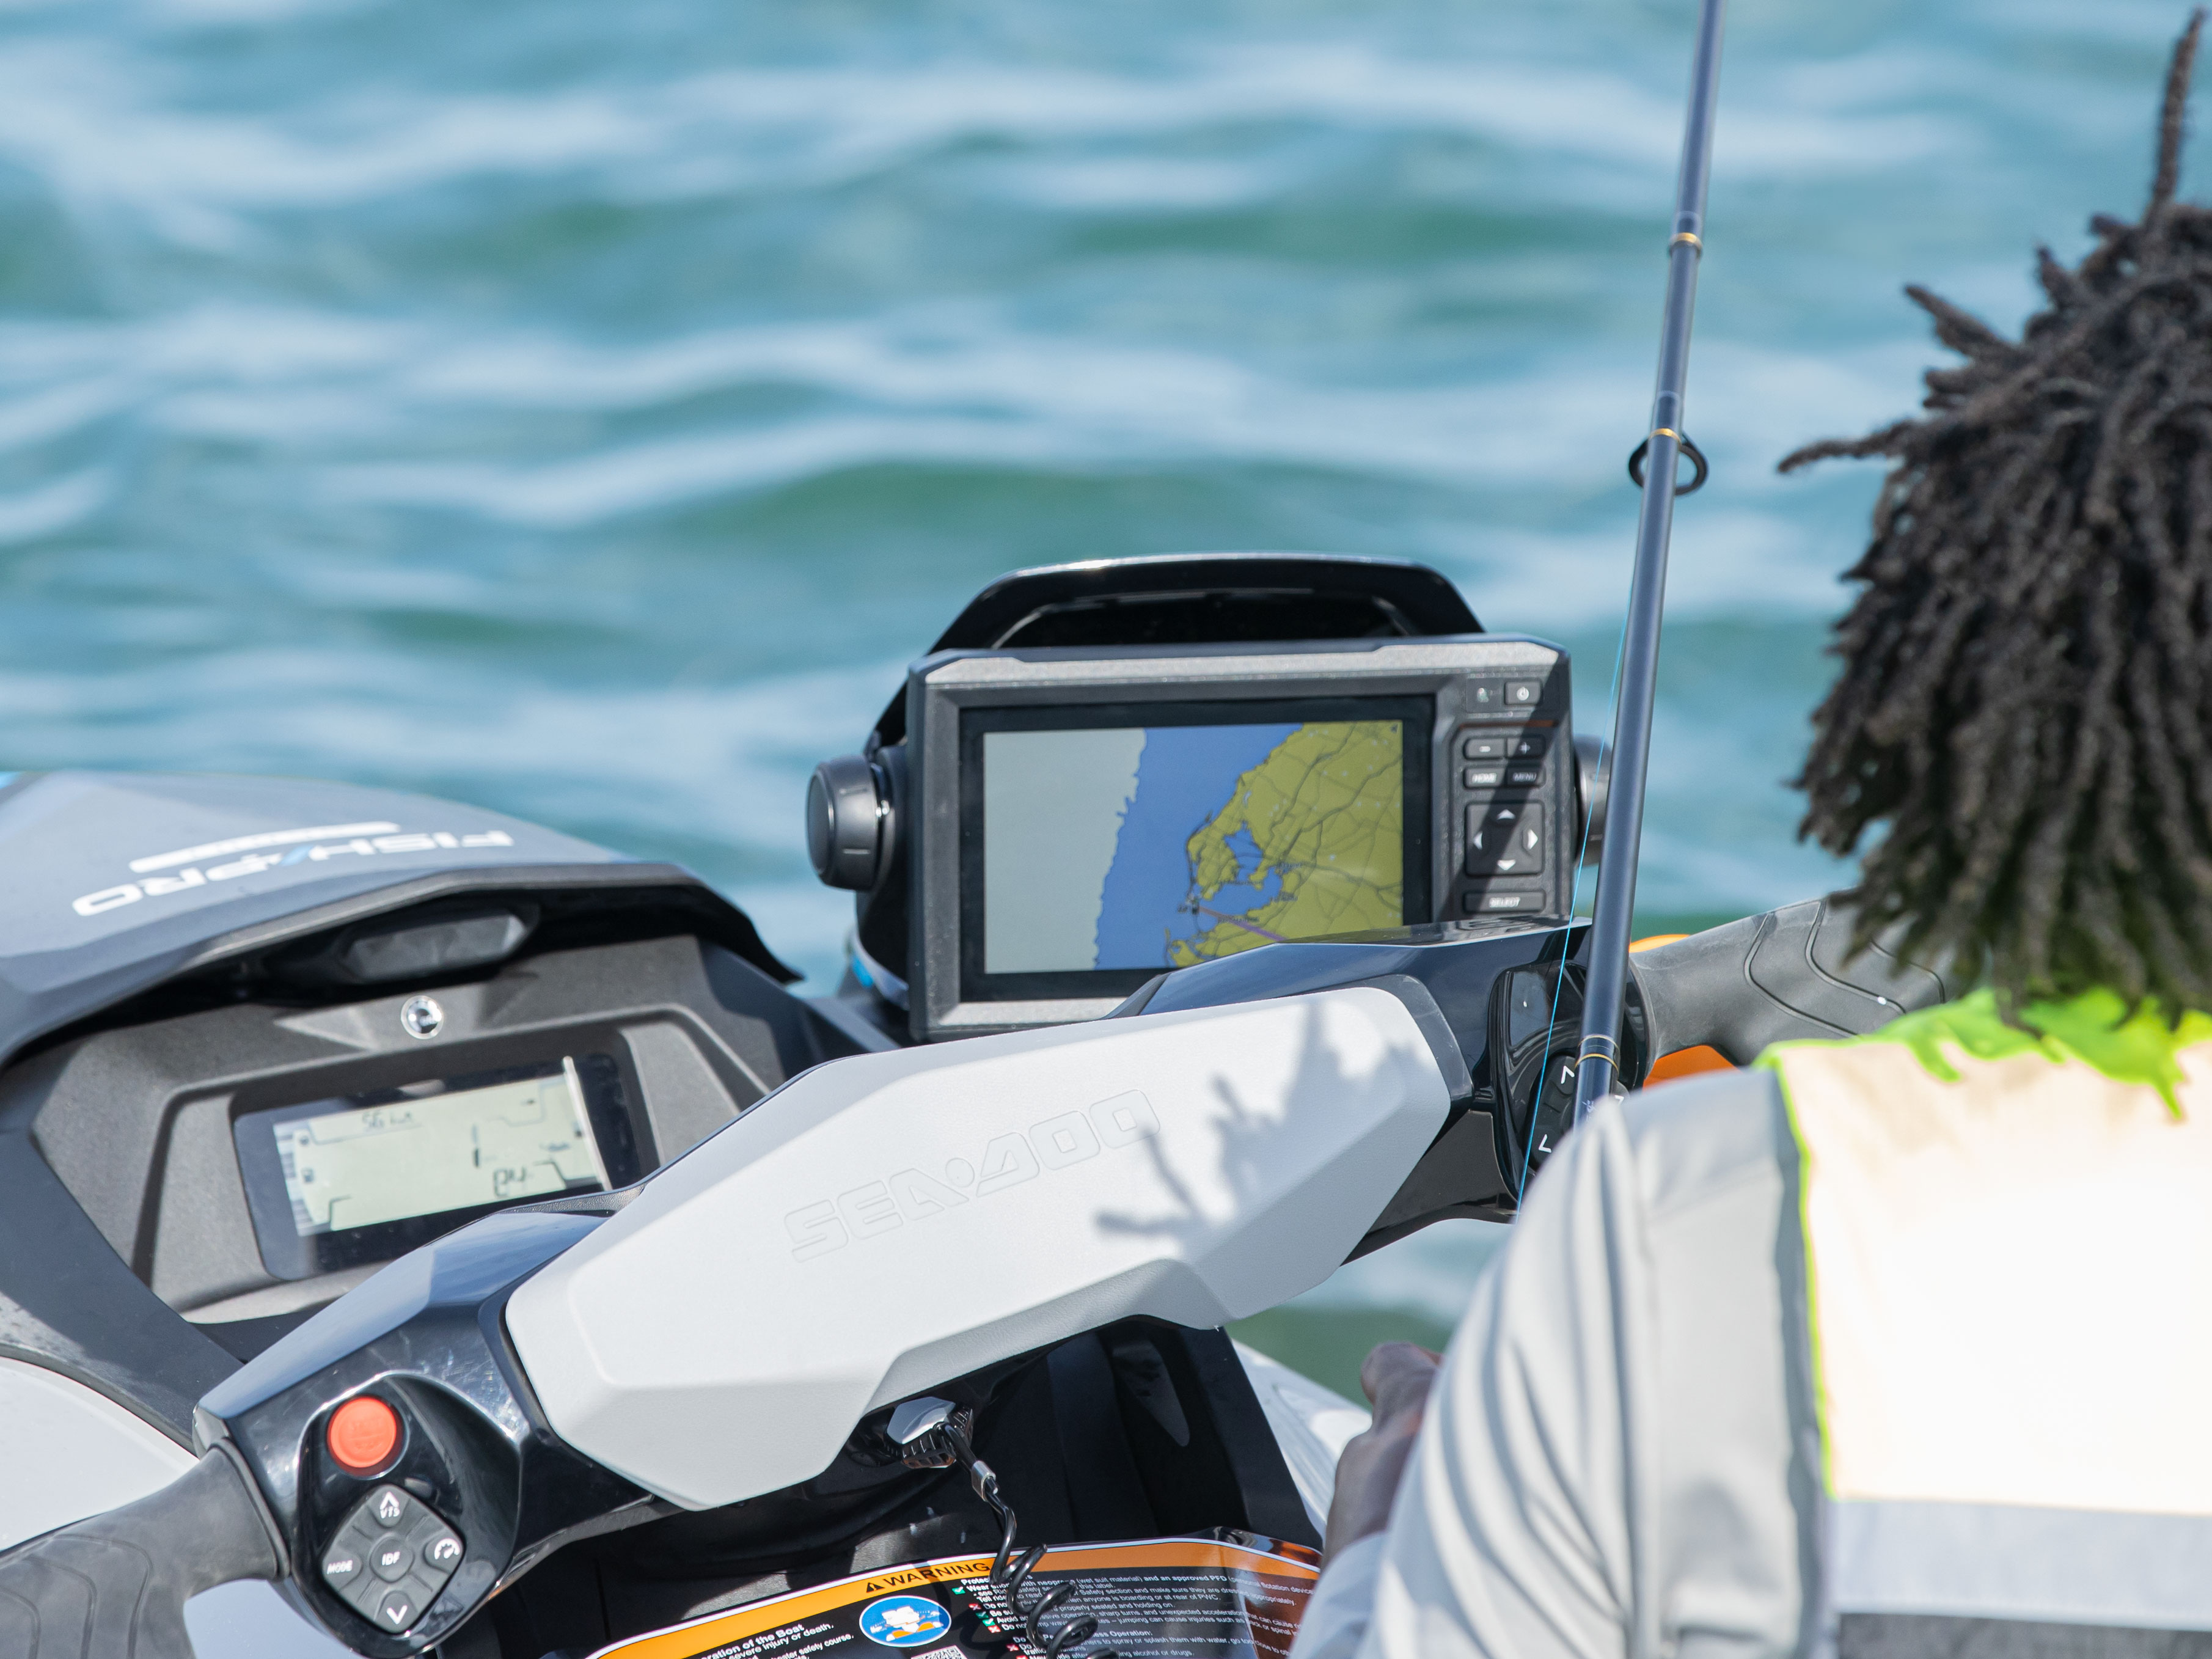  Garmin navigacija in iskalnik rib